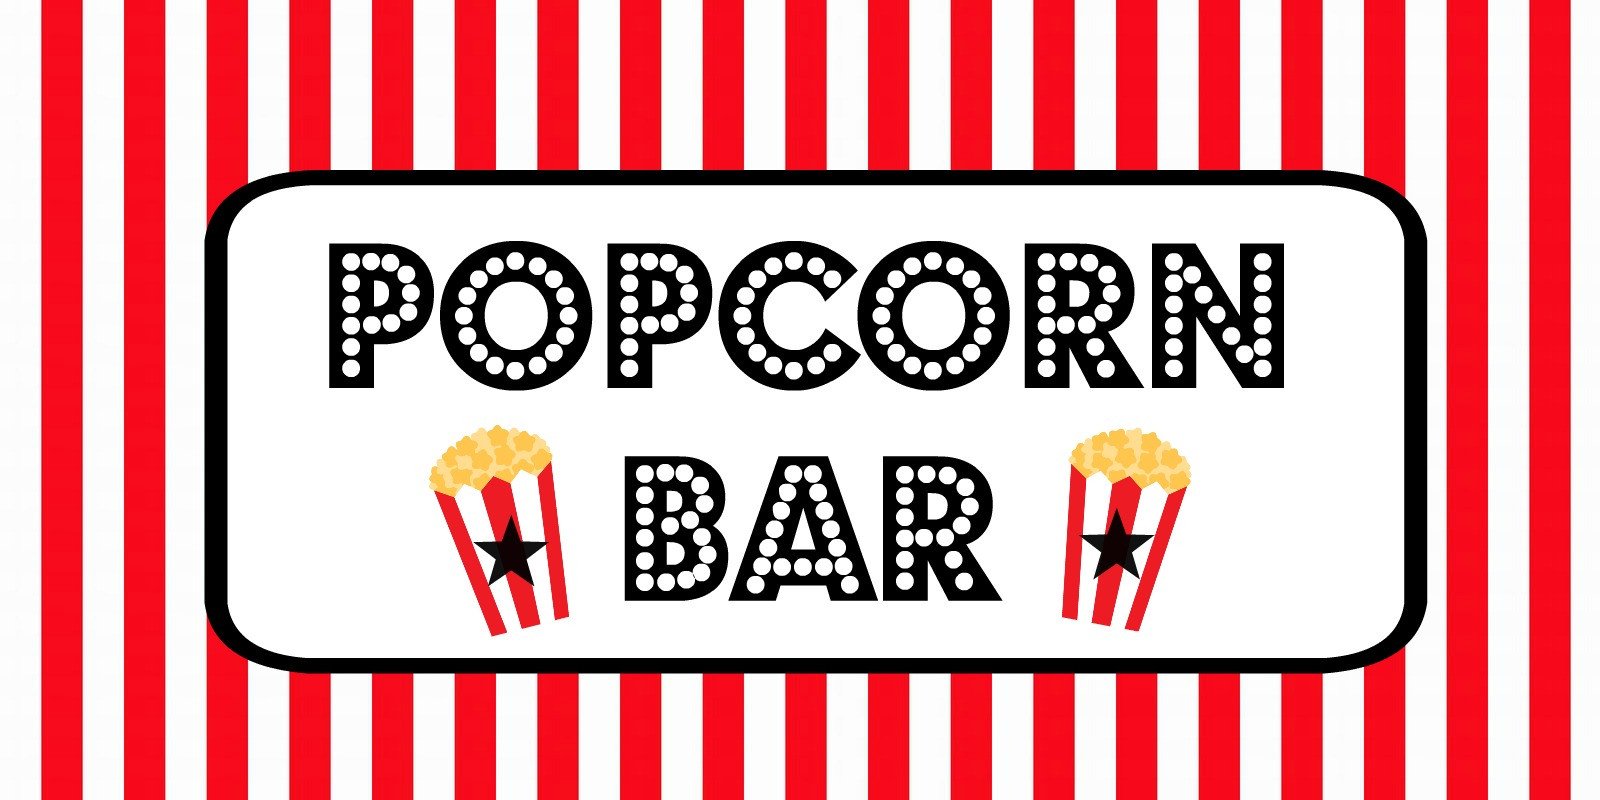 FREE Movie Night Popcorn Bar Printables